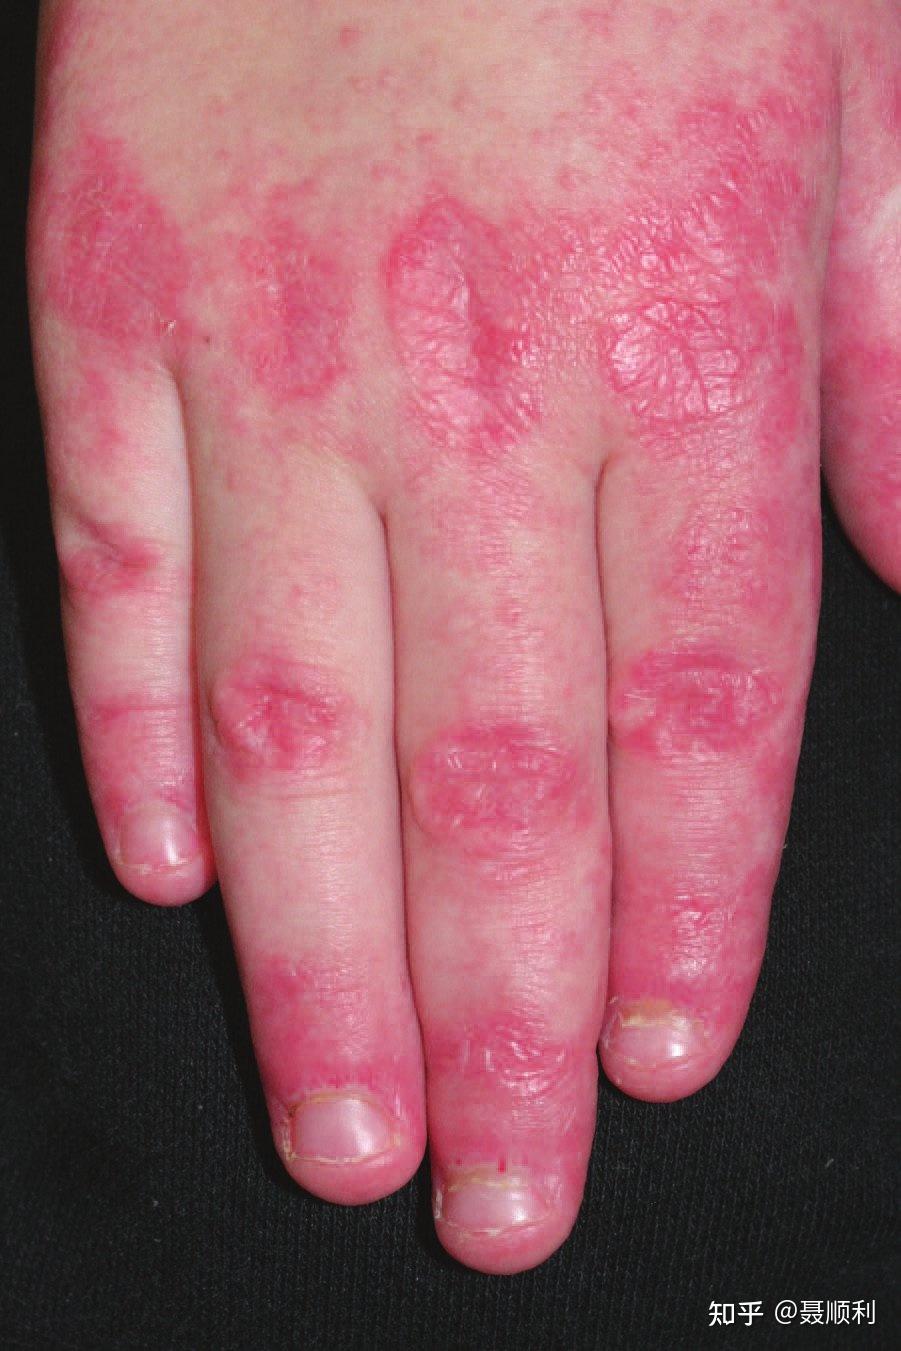 皮肌炎典型的皮疹图片图片